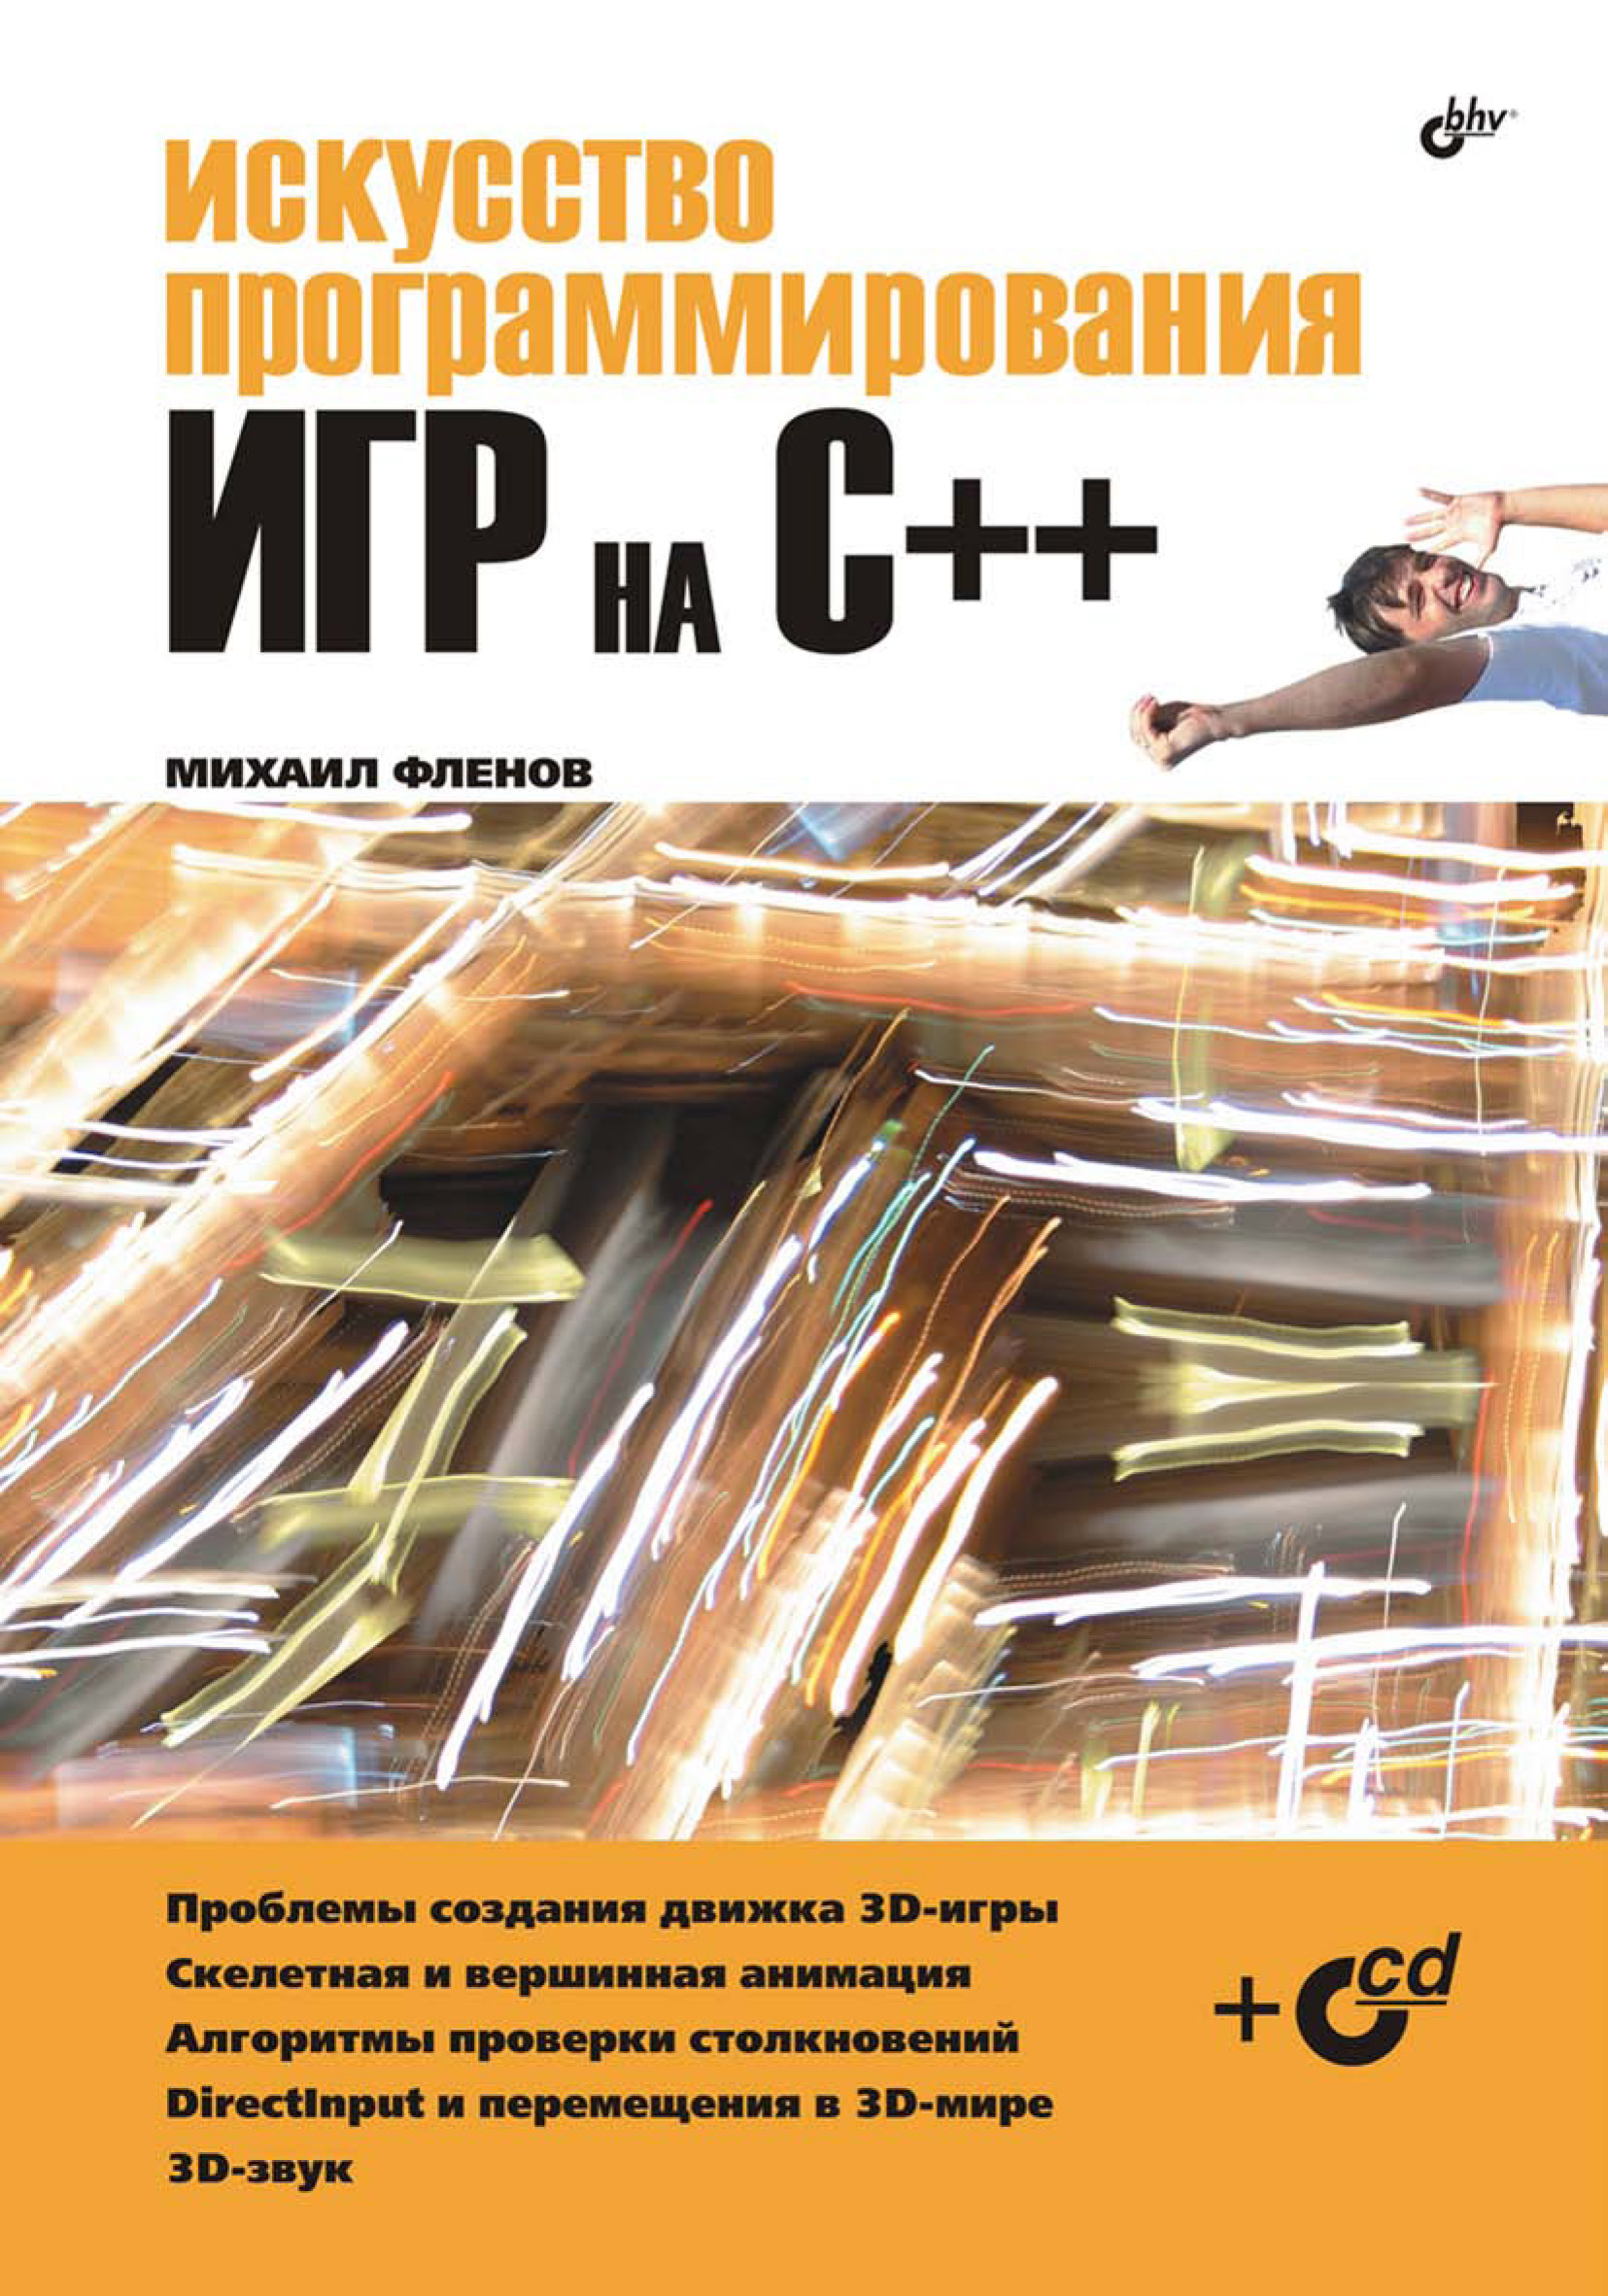 Книга  Искусство программирования игр на С++ созданная Михаил Фленов может относится к жанру программирование. Стоимость электронной книги Искусство программирования игр на С++ с идентификатором 6654136 составляет 103.00 руб.